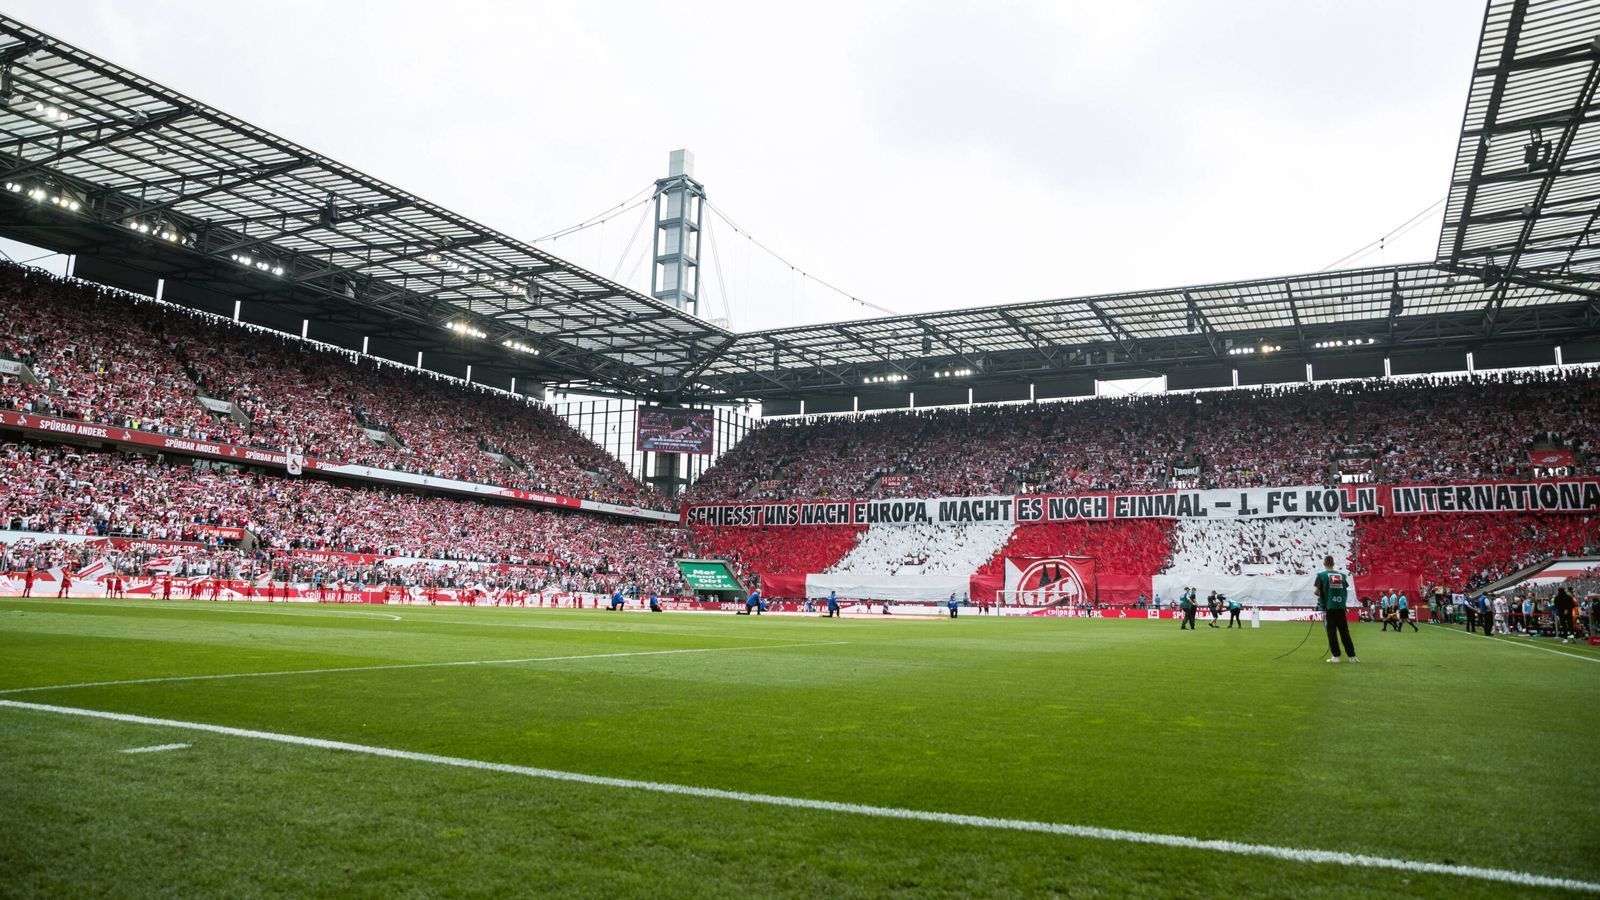 
                <strong>"1. FC Köln international" </strong><br>
                "Schießt uns nach Europa, macht es noch einmal - 1. FC Köln international", stand auf dem riesigen Banner der FC-Fans. 
              